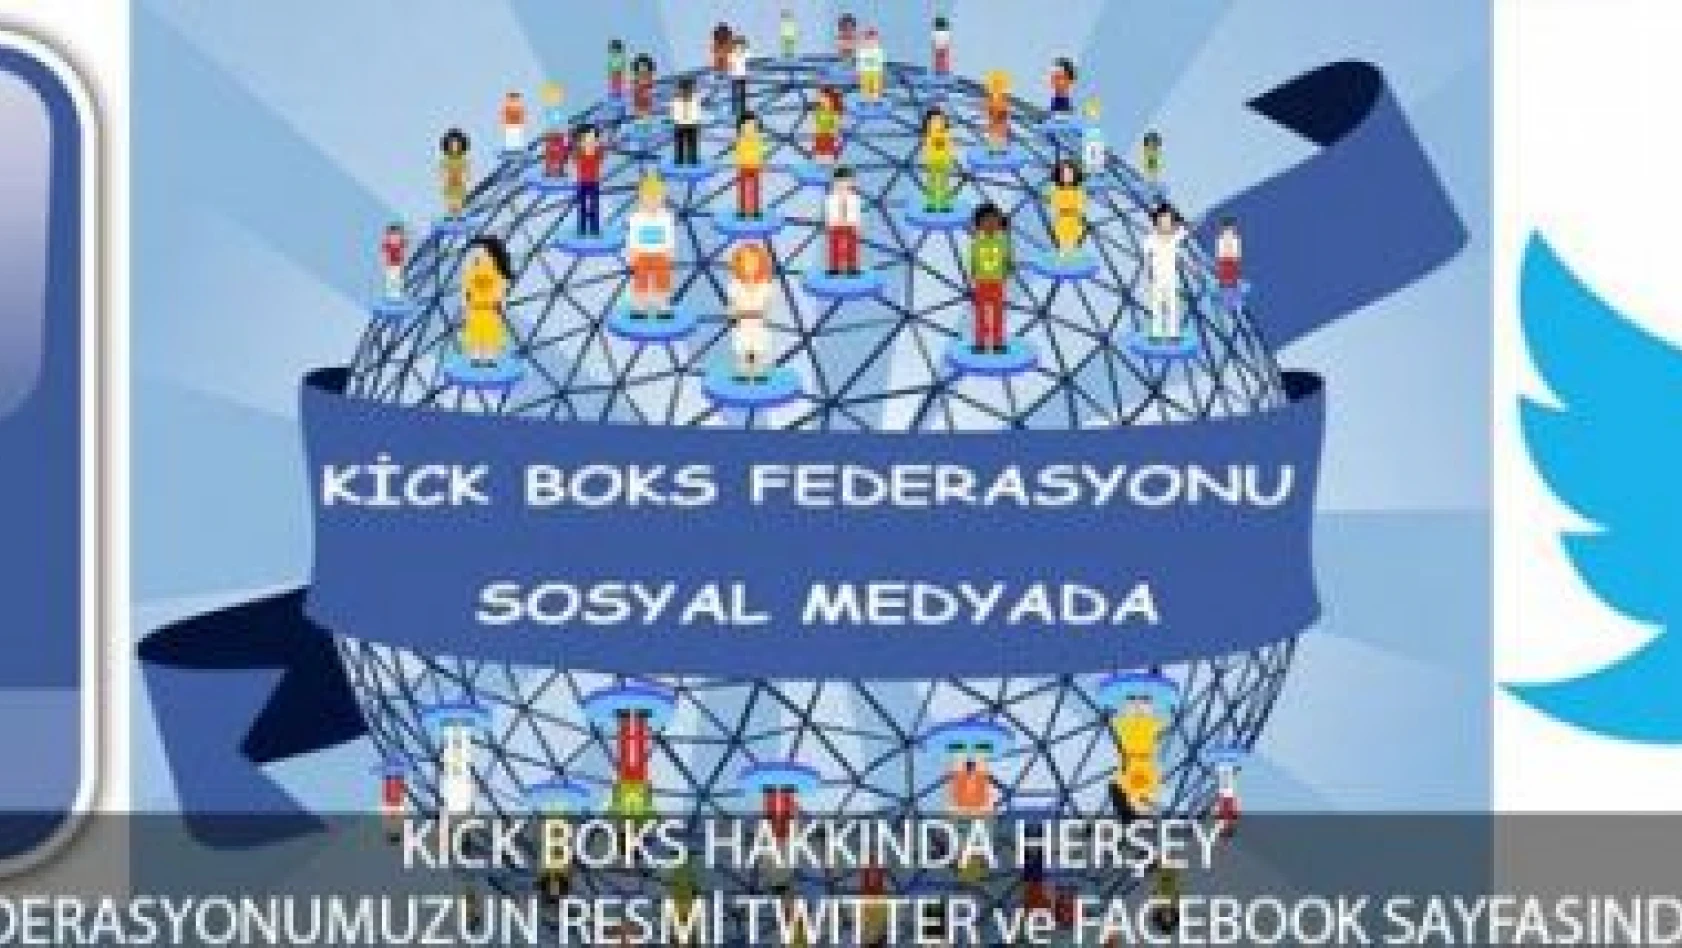 Kick Boks Federasyonu Facebook ve Twitter Resmi Adresleri